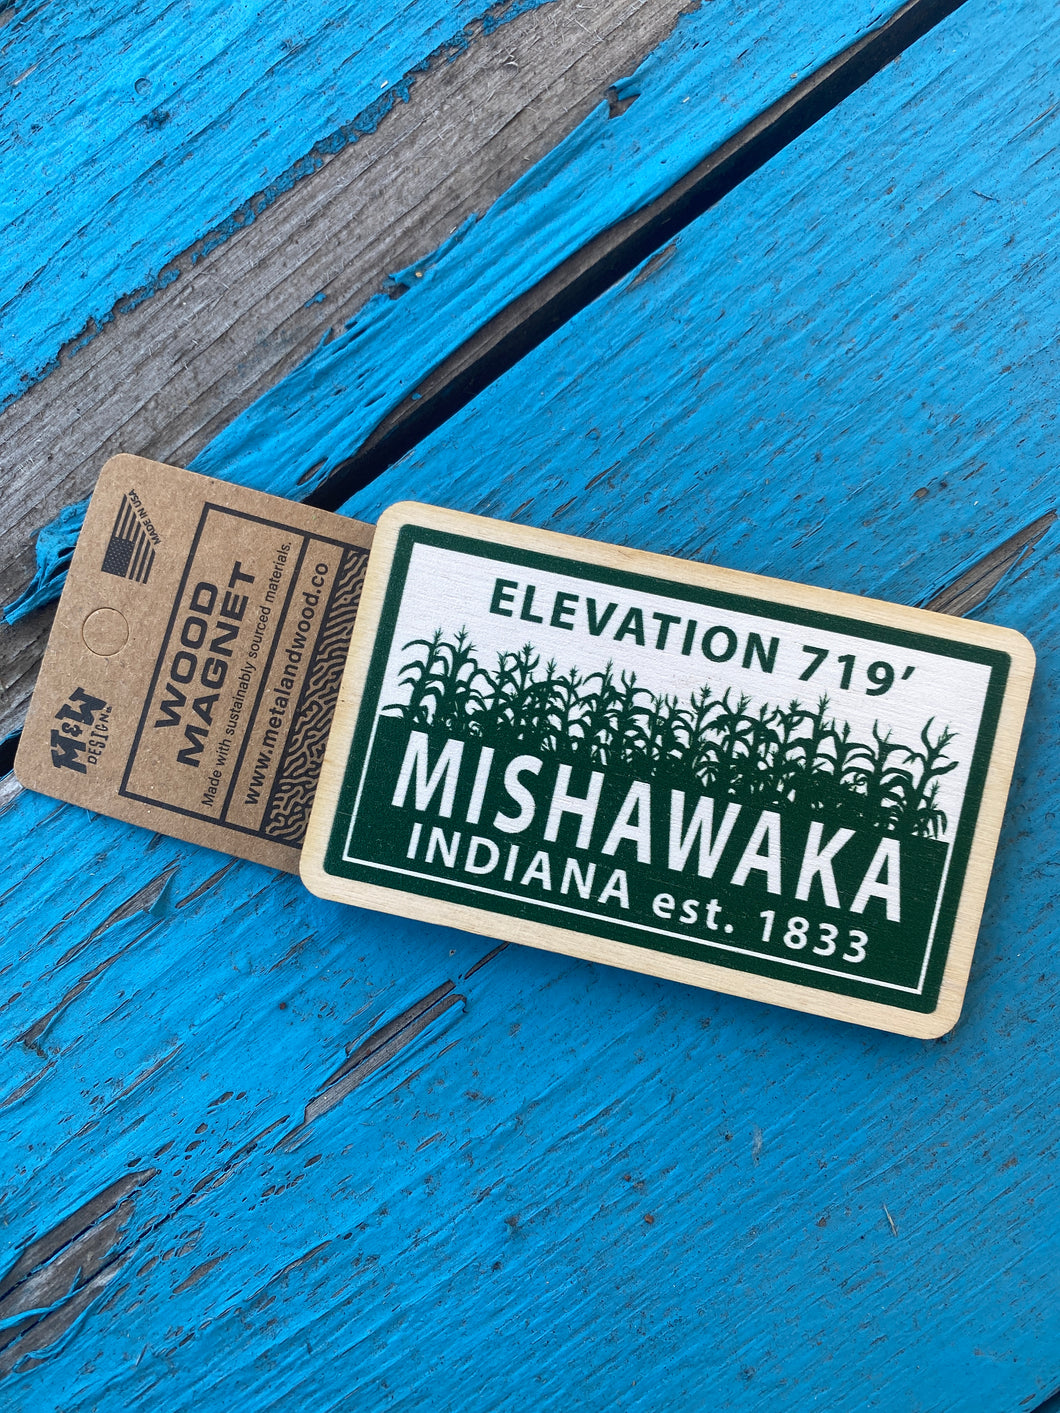 Mishawaka indiana elevation magnet